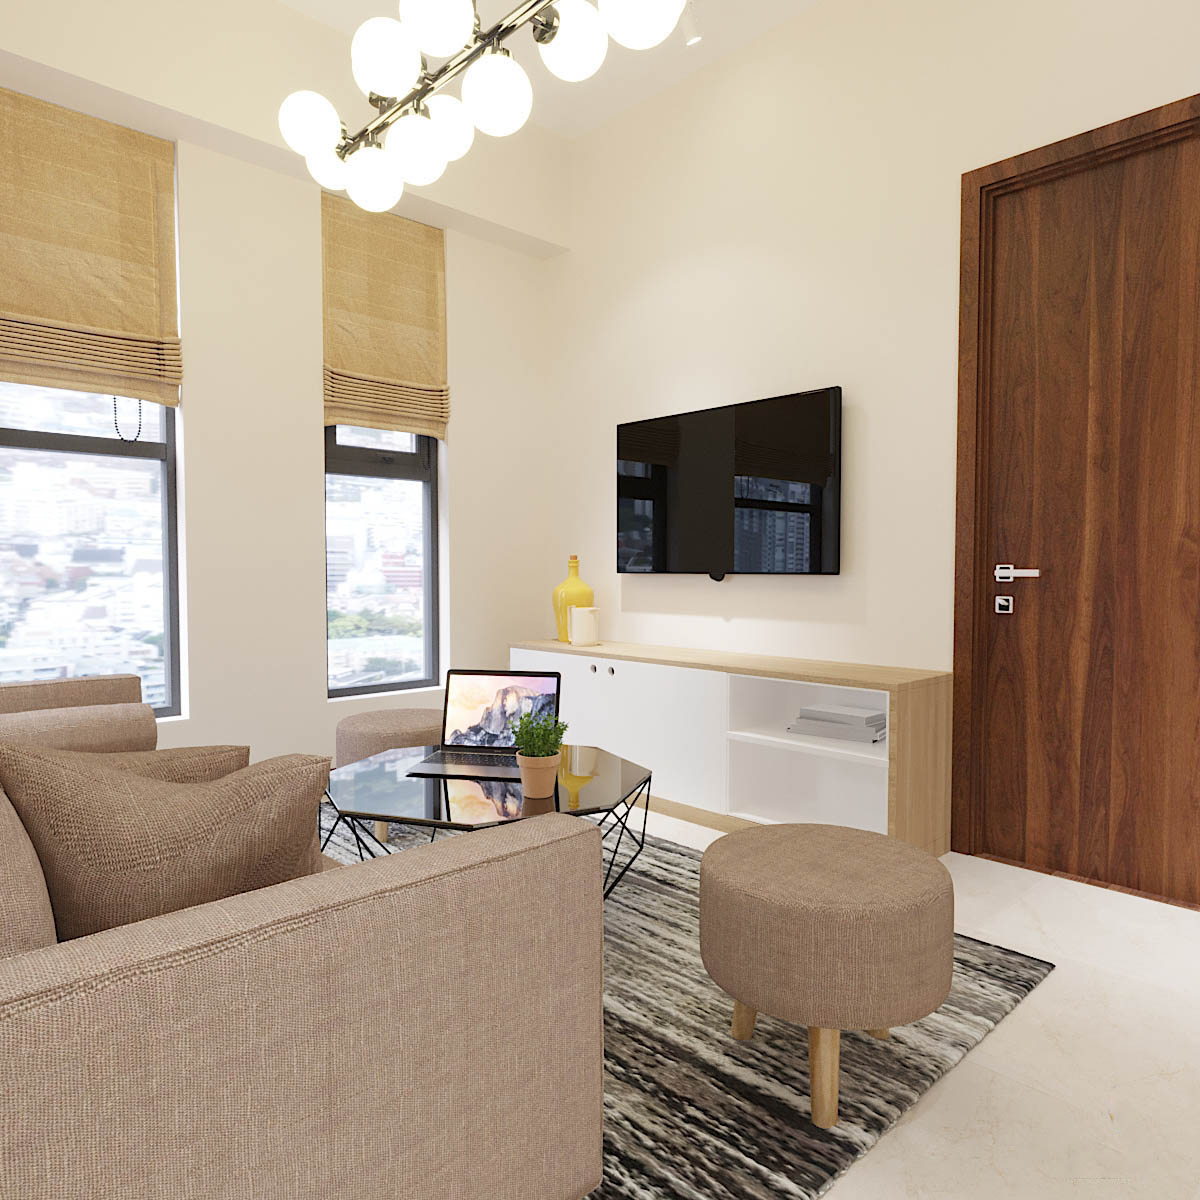 Thiết kế nội thất căn hộ chung cư Centana Quận 2 – Chị Phương Anh Toại